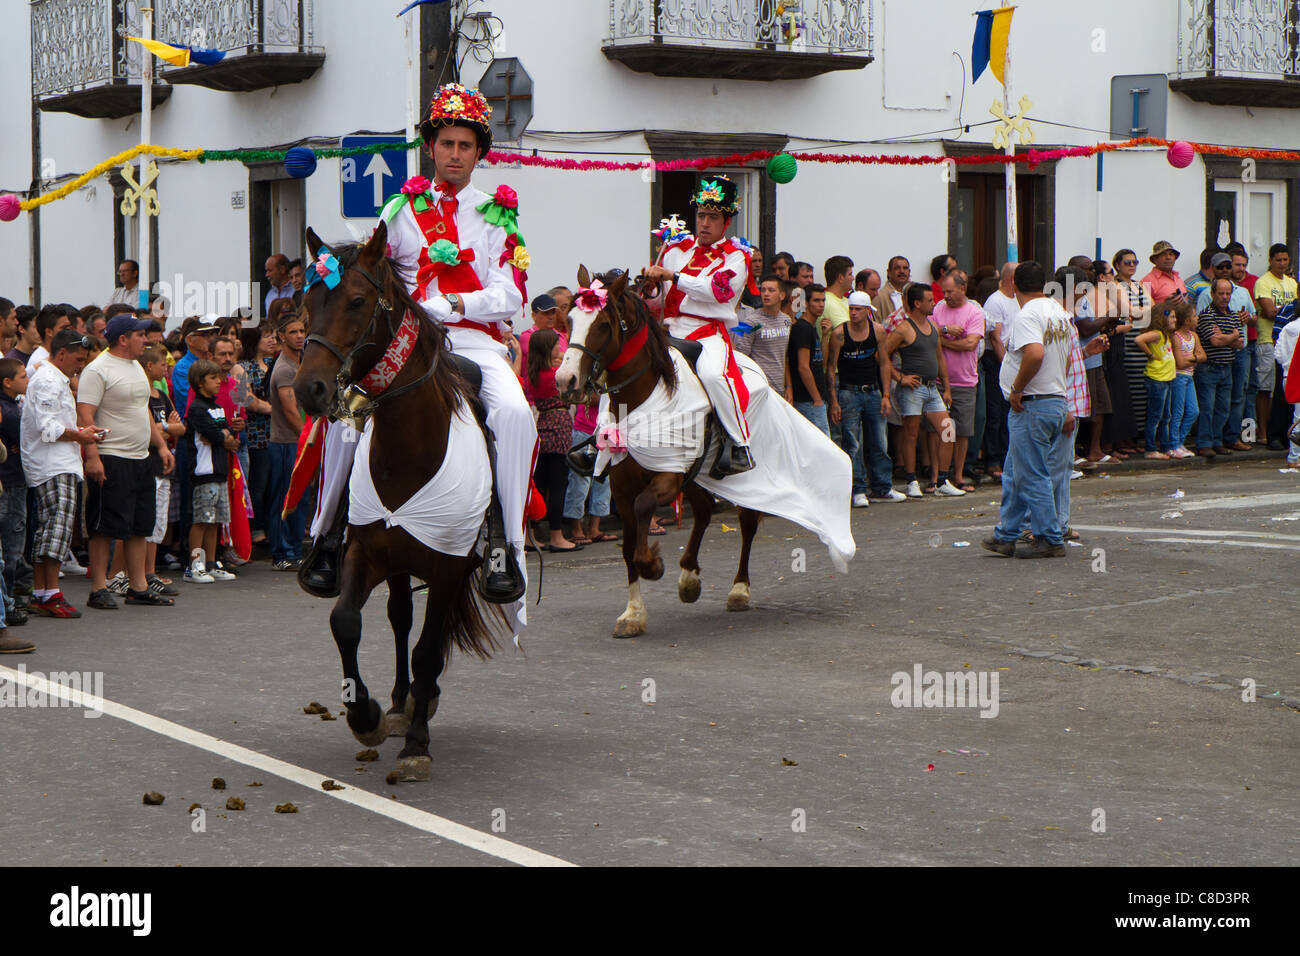 Horse parade during the Saint Peter festival (Festas de São Pedro) in Ribeira Grande, São Miguel island, Azores. Stock Photo